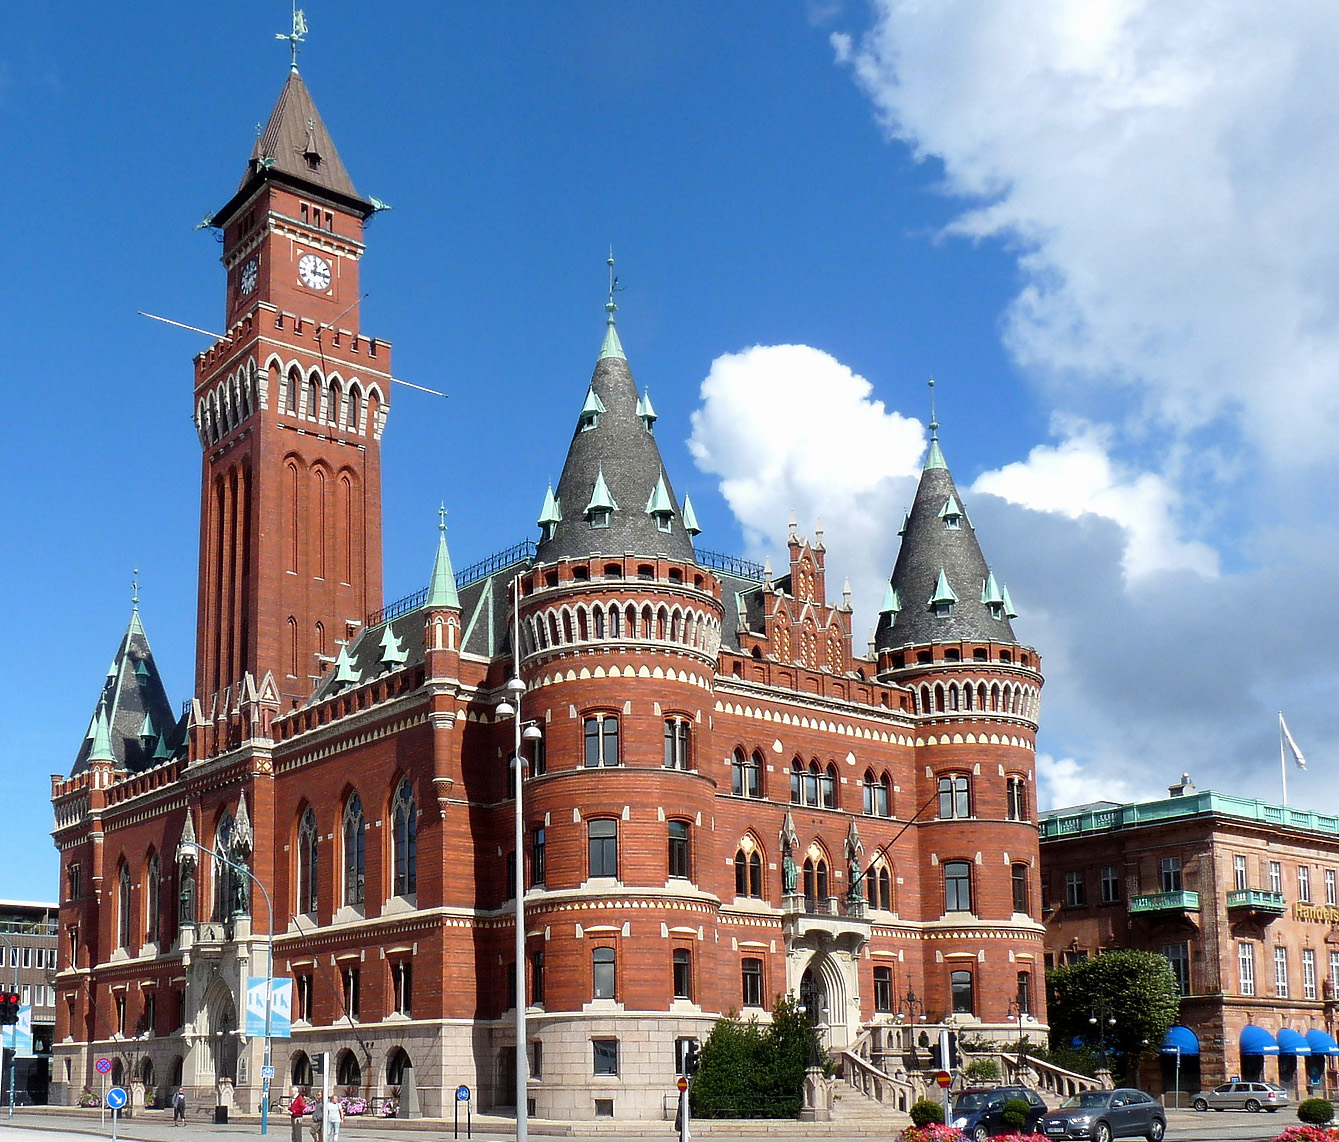 Är Rådhuset i Helsingborg Sveriges vackraste byggnad genom tiderna?